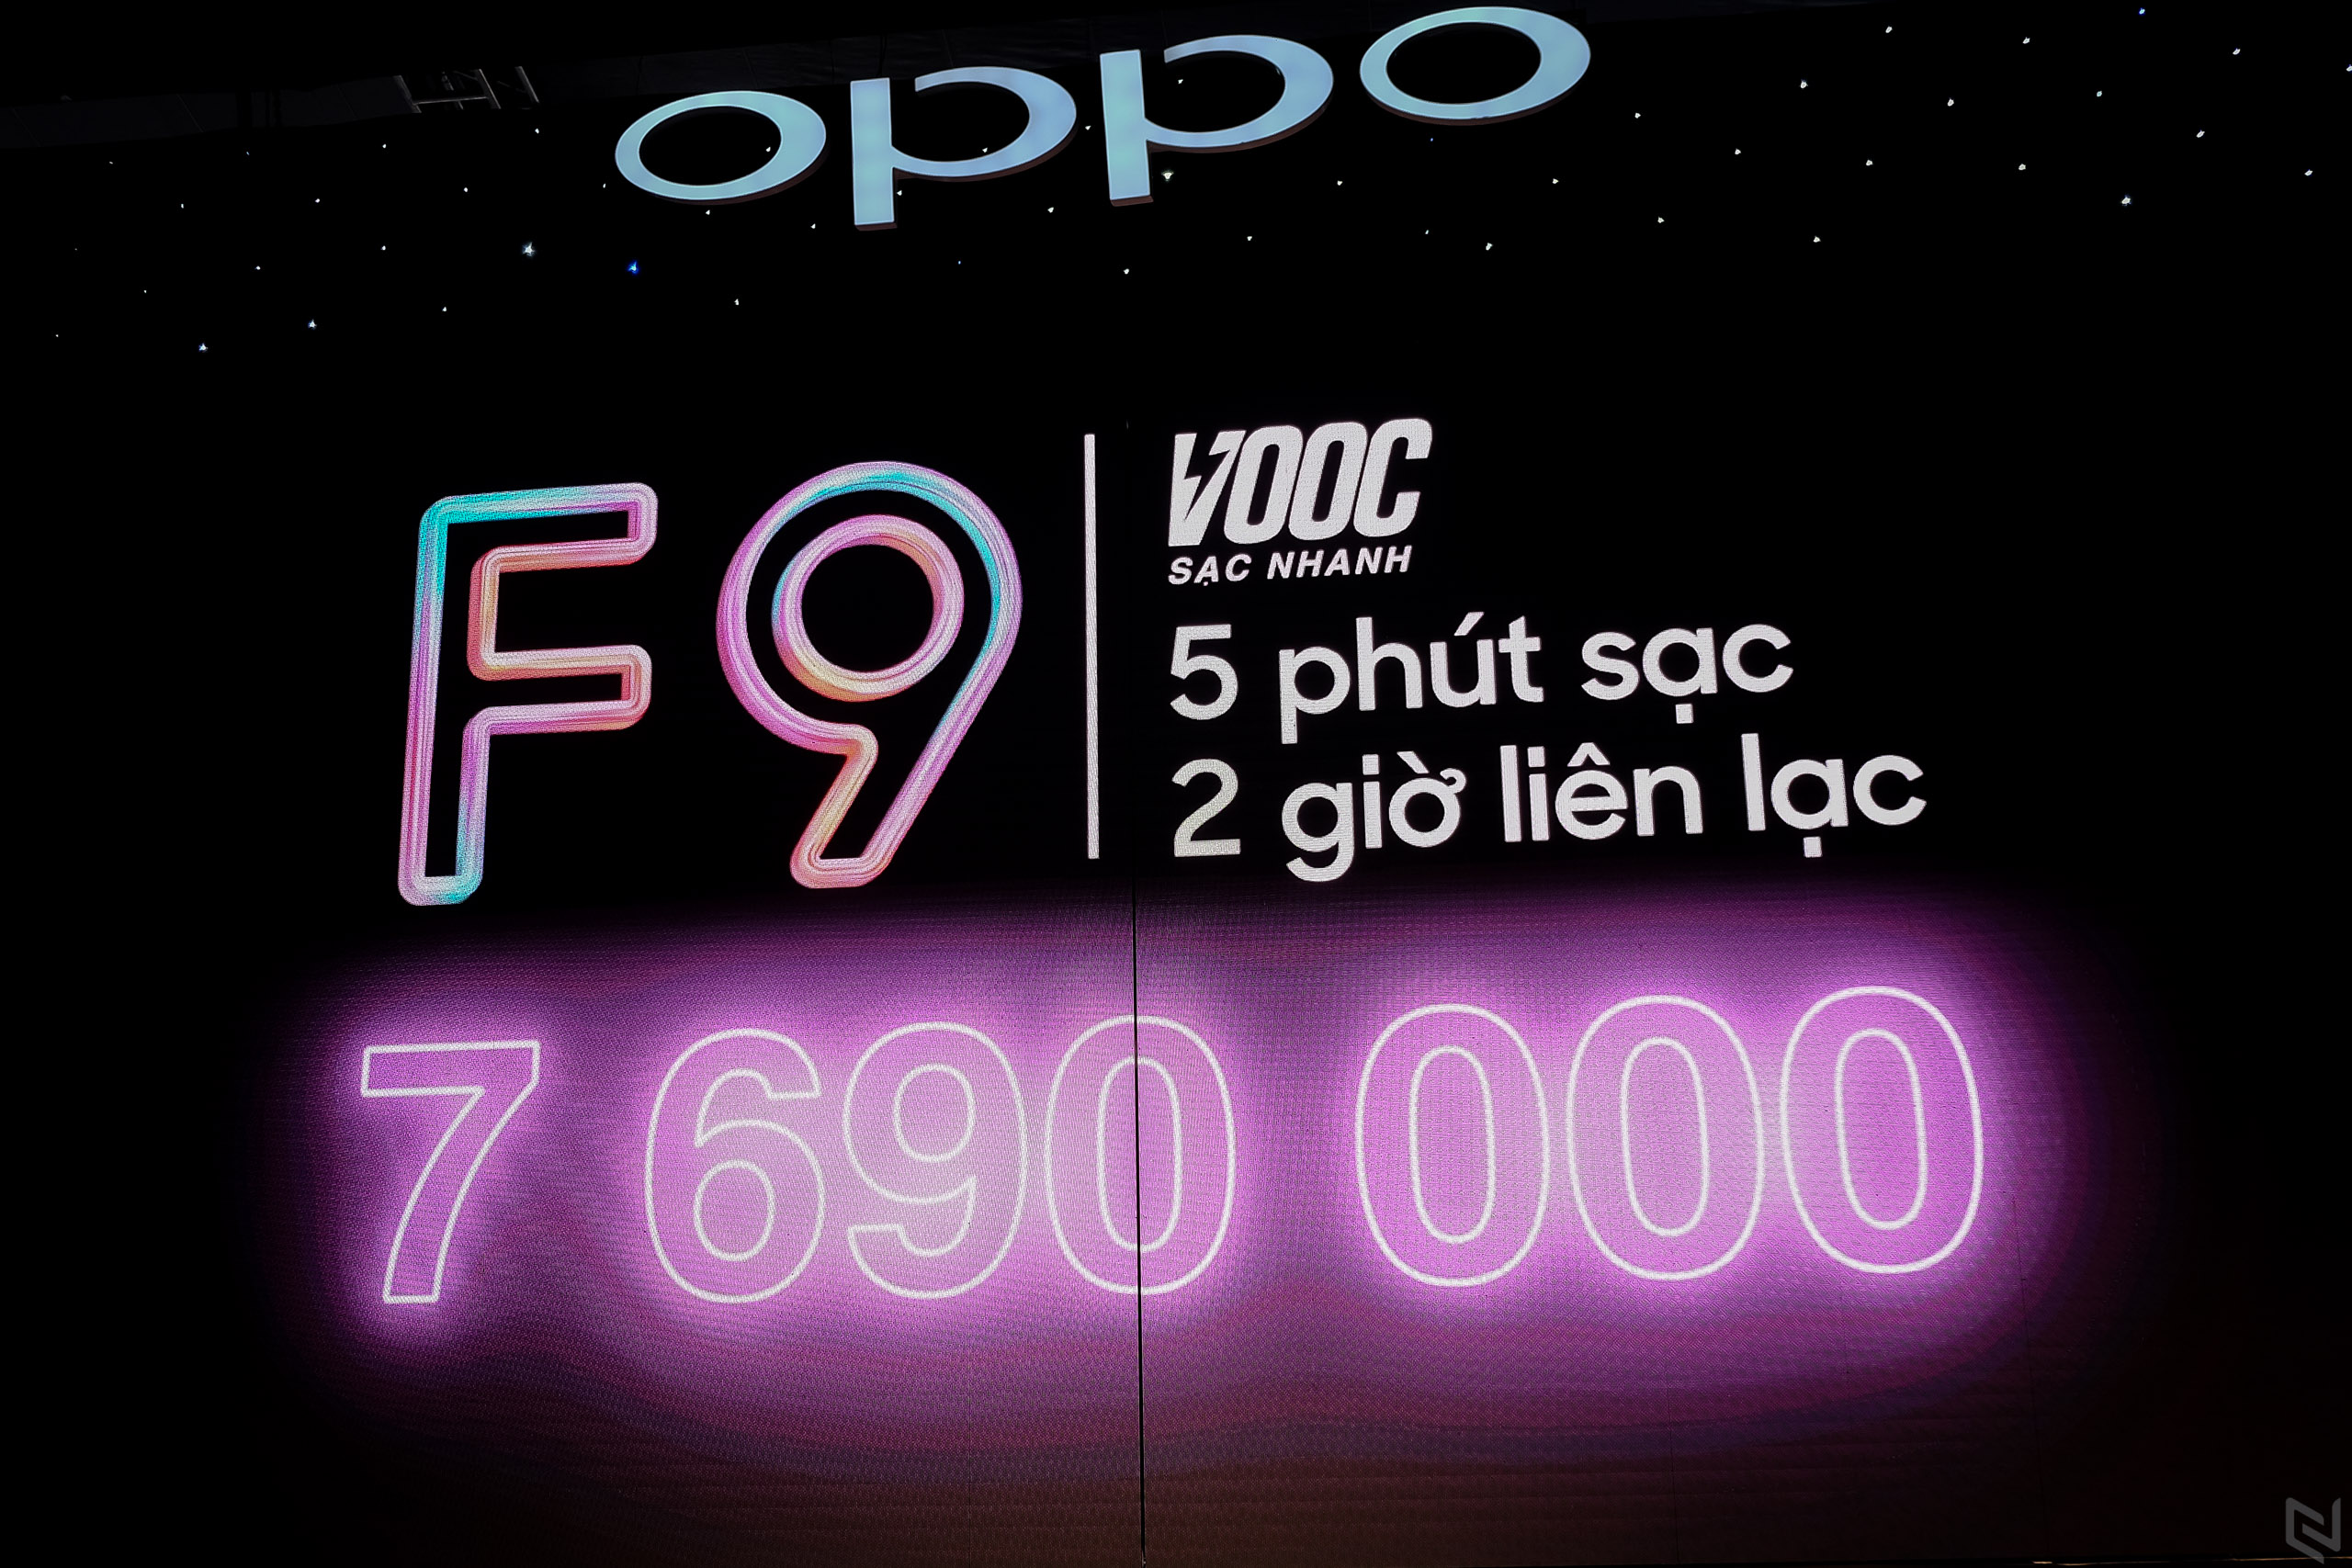 OPPO F9 ra mắt, siêu tốc độ cùng sạc nhanh VOOC, giá 7.690.000đ